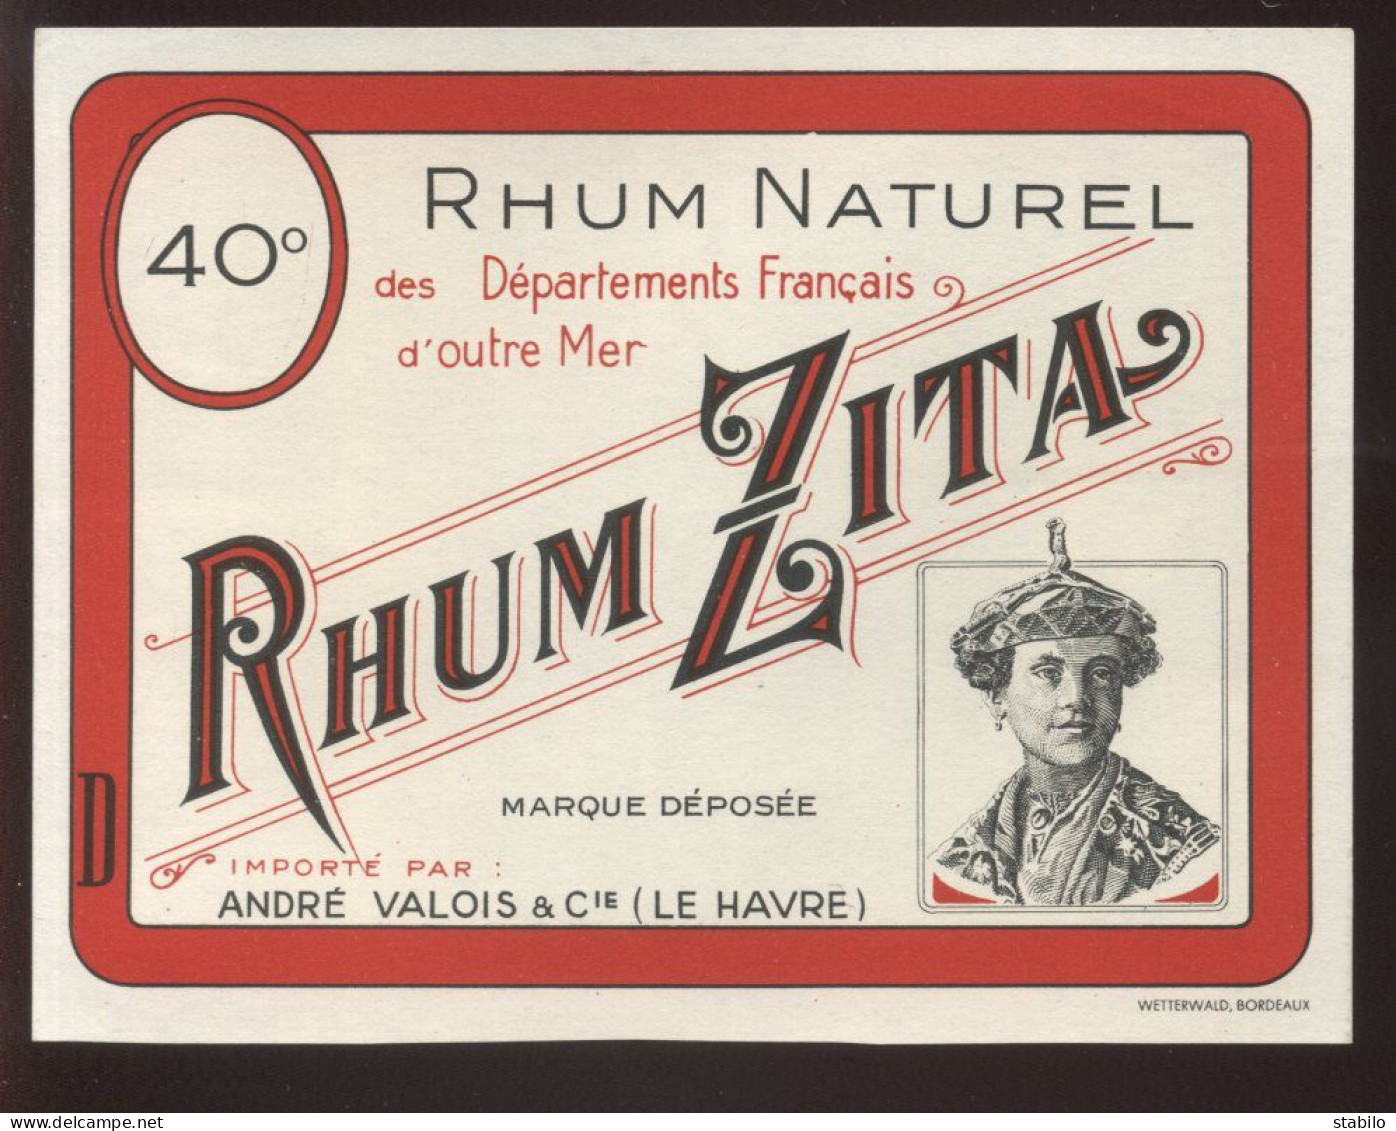 ETIQUETTES - RHUM NATUREL ZITA - ANDRE VALOIS & CIE, LE HAVRE - Rum